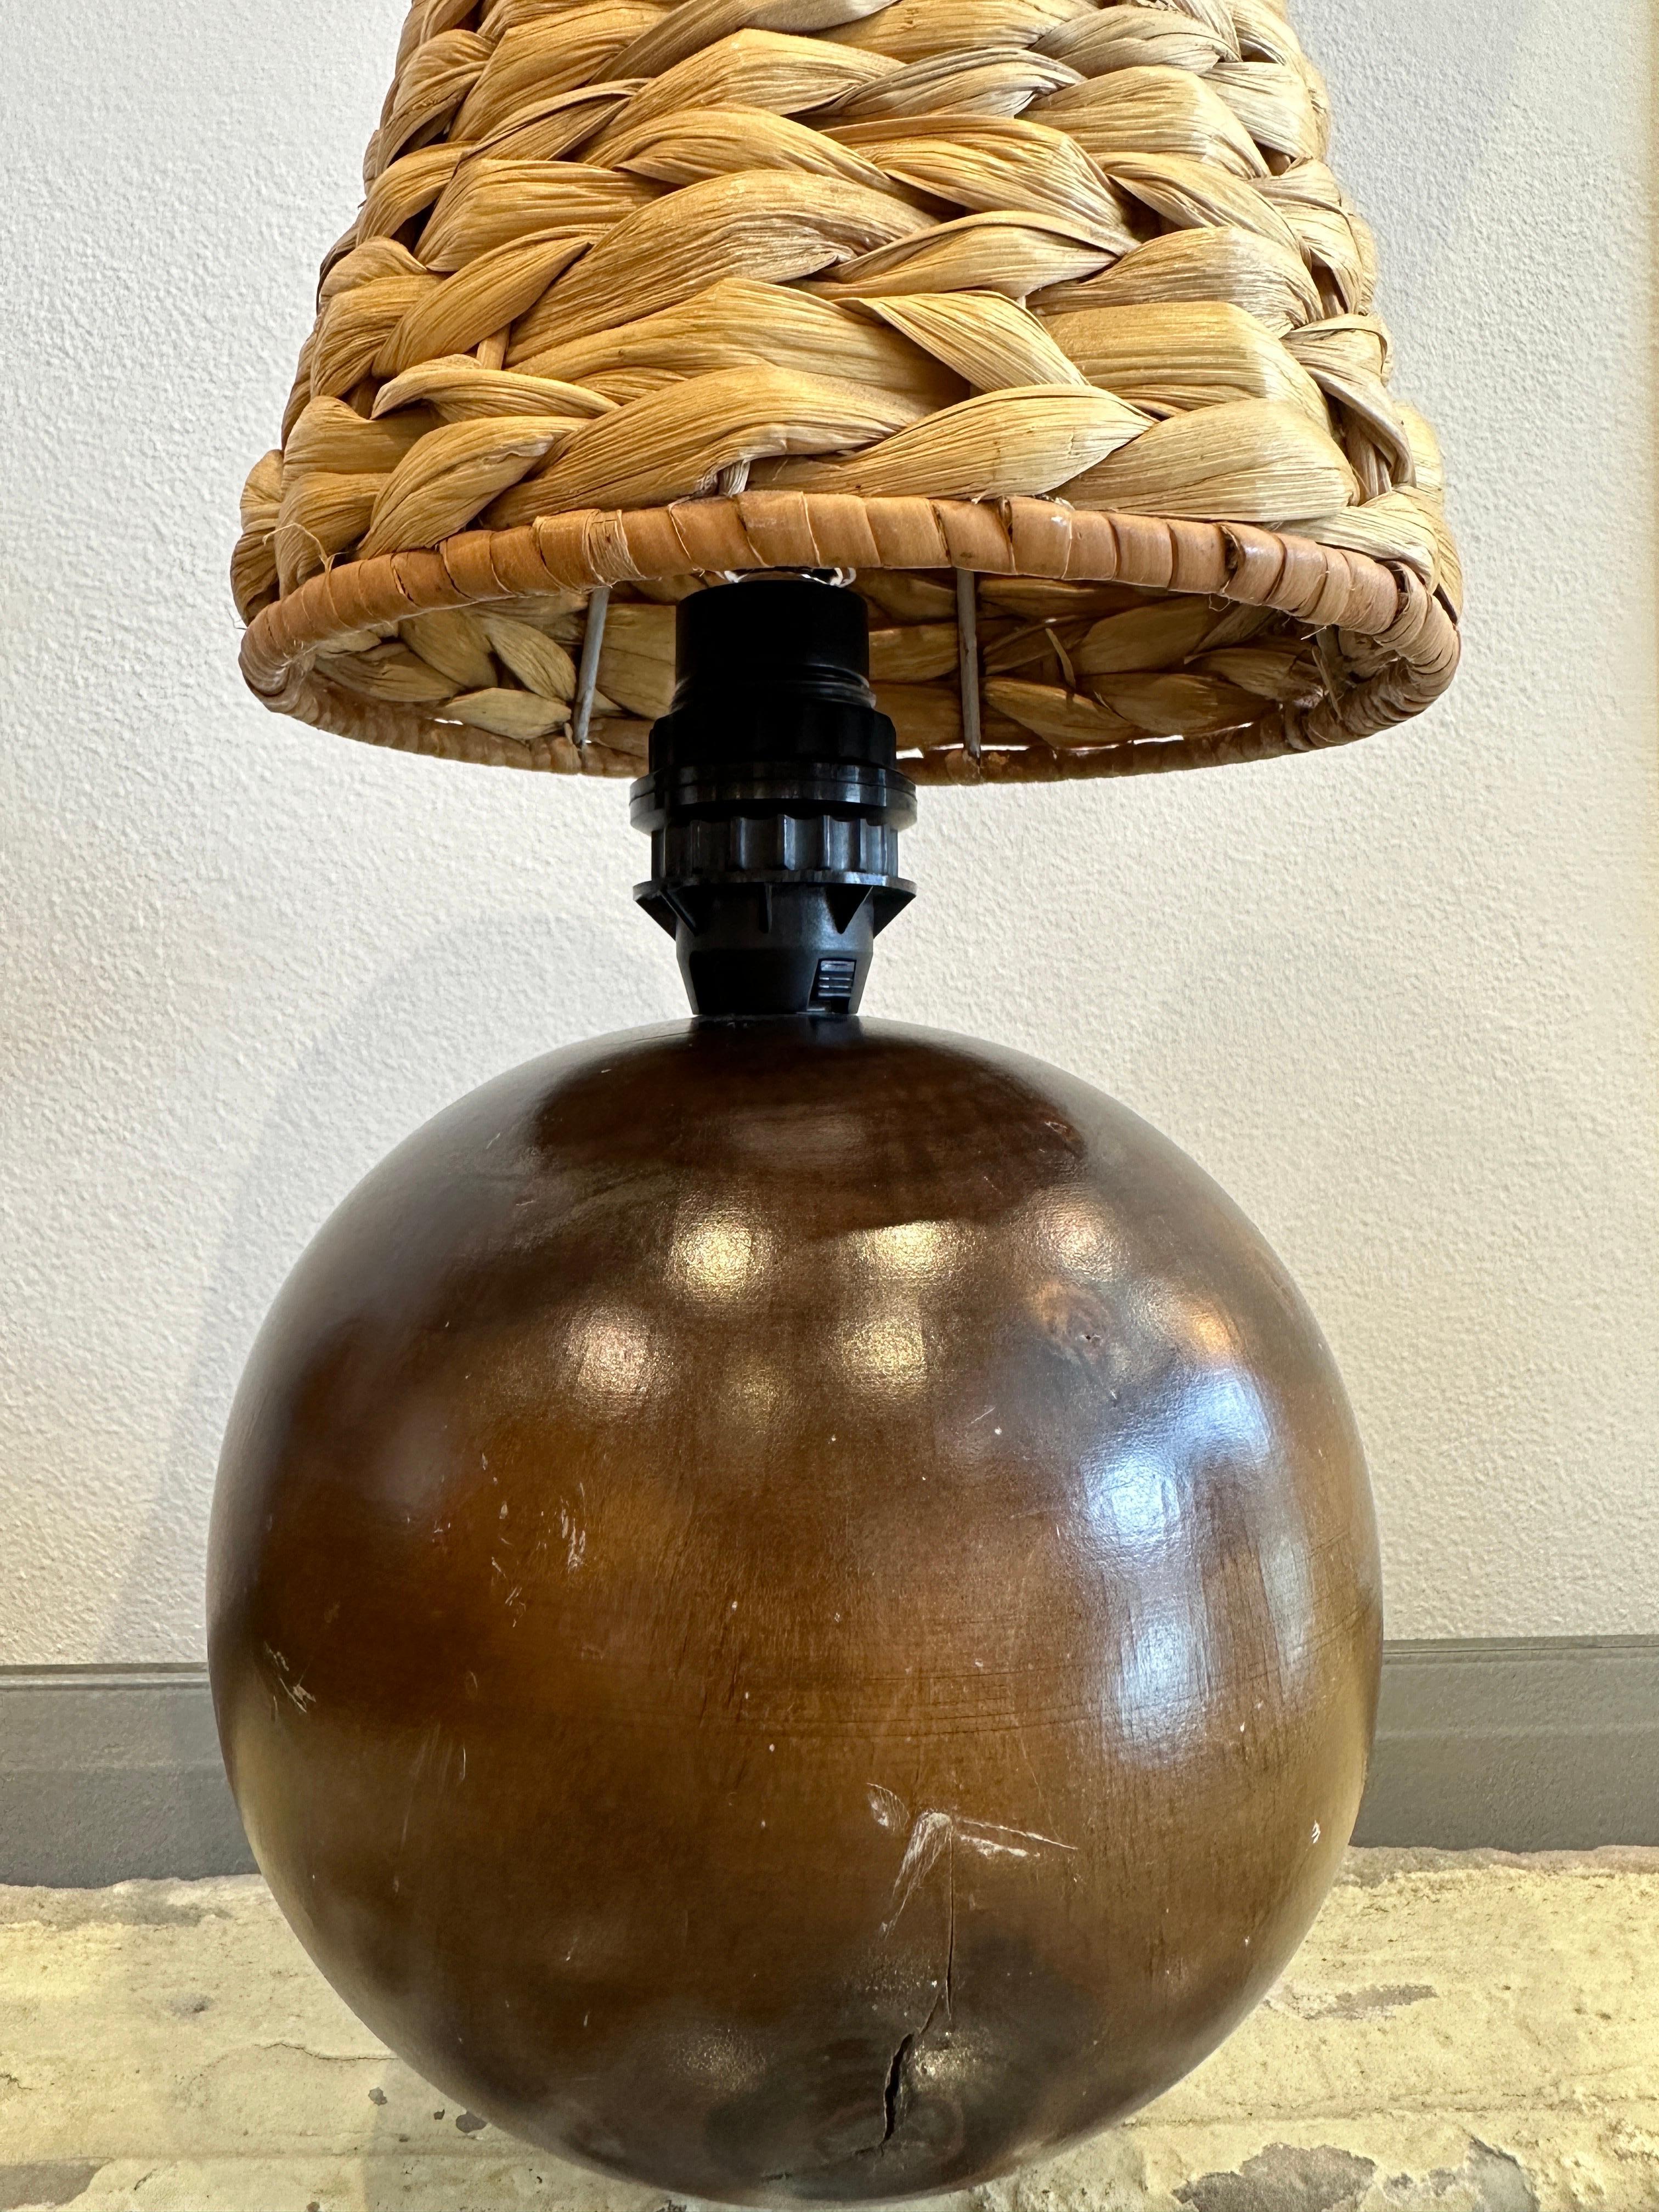 Cette lampe en teck en forme de globe est composée d'un solide morceau de bois de teck formé par des artisans scandinaves pour créer cette lampe étonnamment organique. NOTE : il y a un groupe étonnant de ces objets dans des tailles et des nuances